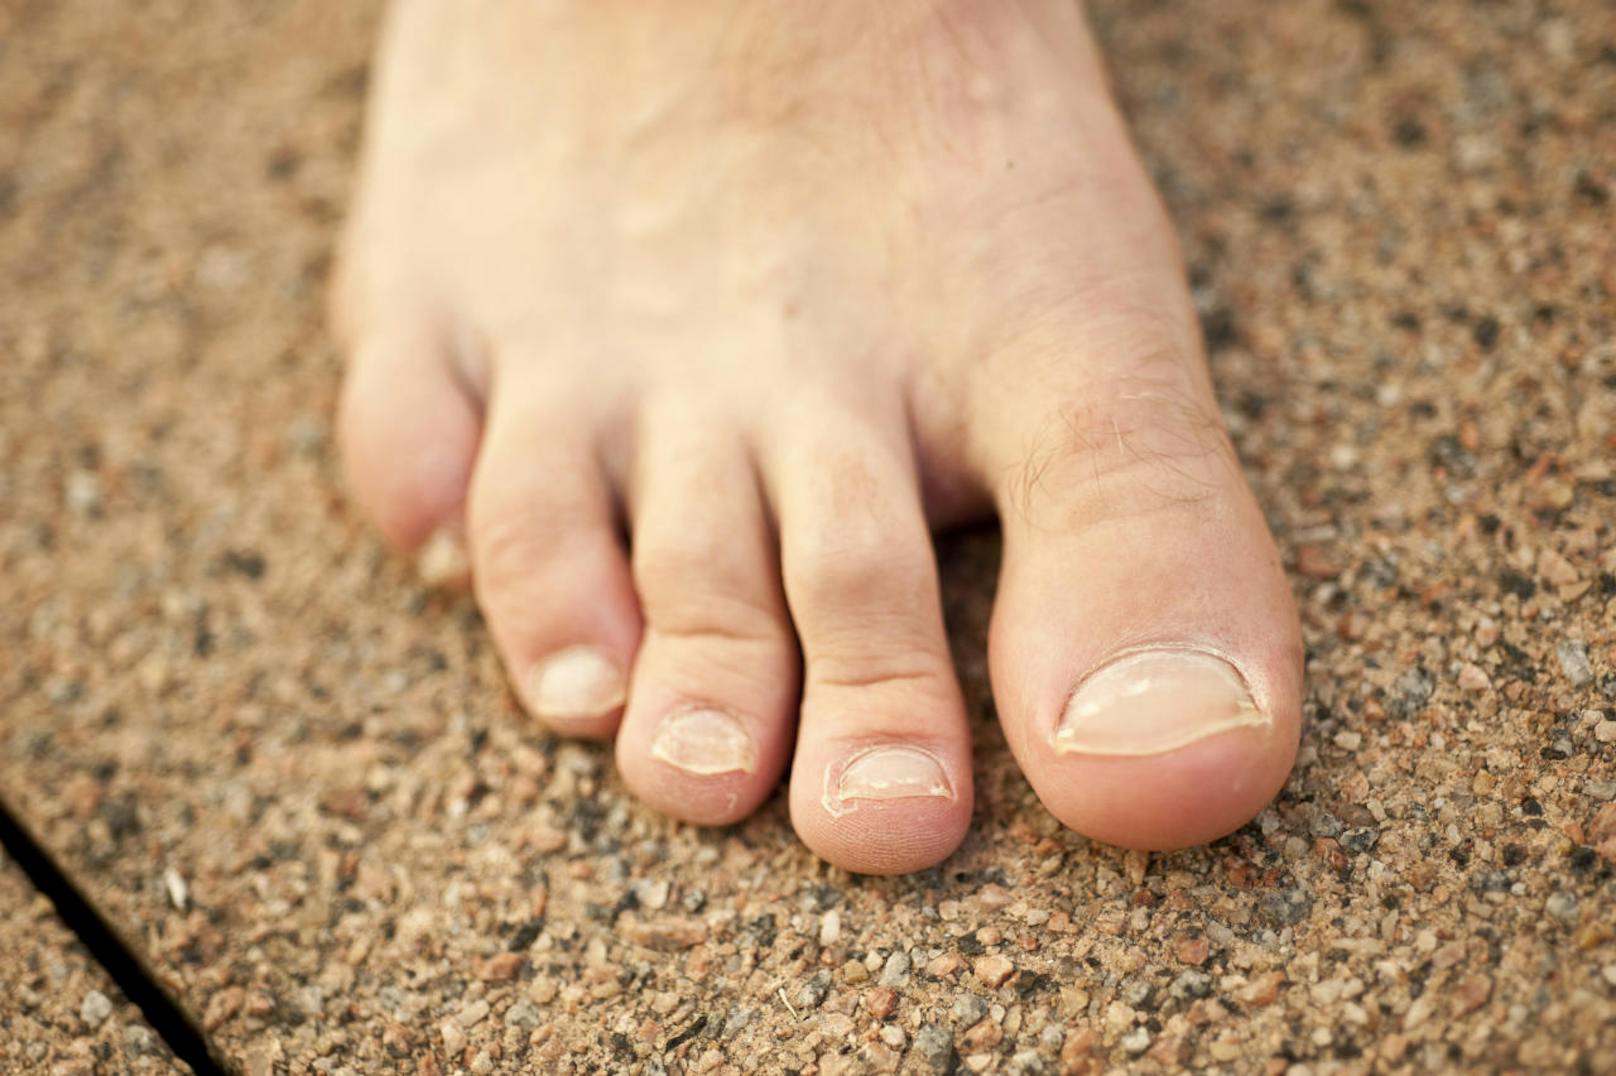 <b>Weiße Flecken </b>
Kleine weiße Punkte auf den Nägeln? Mediziner sprechen bei weißlichen Verfärbungen der Fußnägelauch von Leukonychie. Doch keine Bange: Dieses Fußnagel-Signal ist eher ungefährlich und kommt bei vielen Menschen vor. Meist entstehen die weißen Flecken durch harmlose Quetschungen des Nagels.